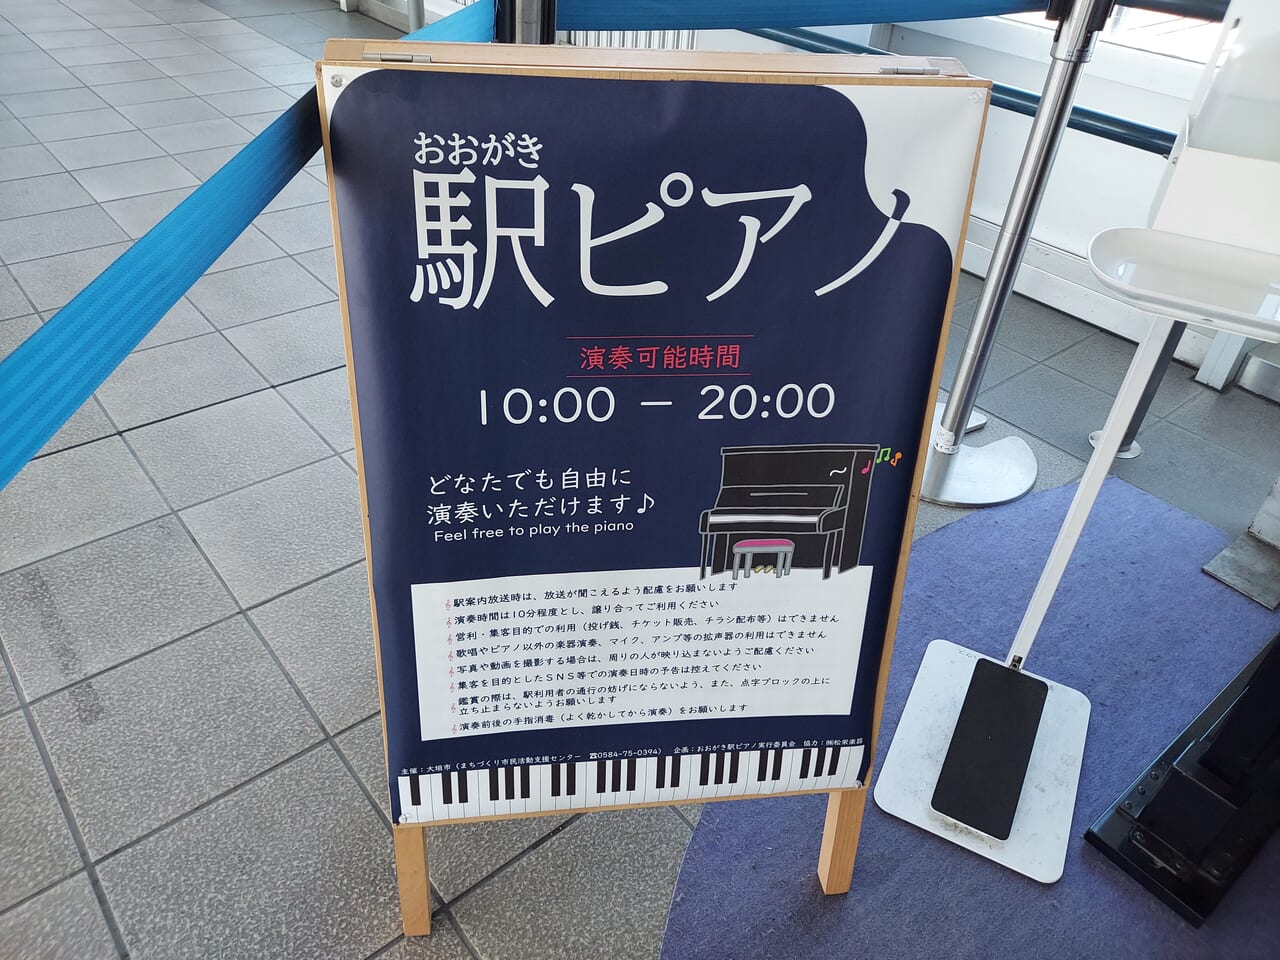 おおがき駅ピアノ「夕涼みコンサート」